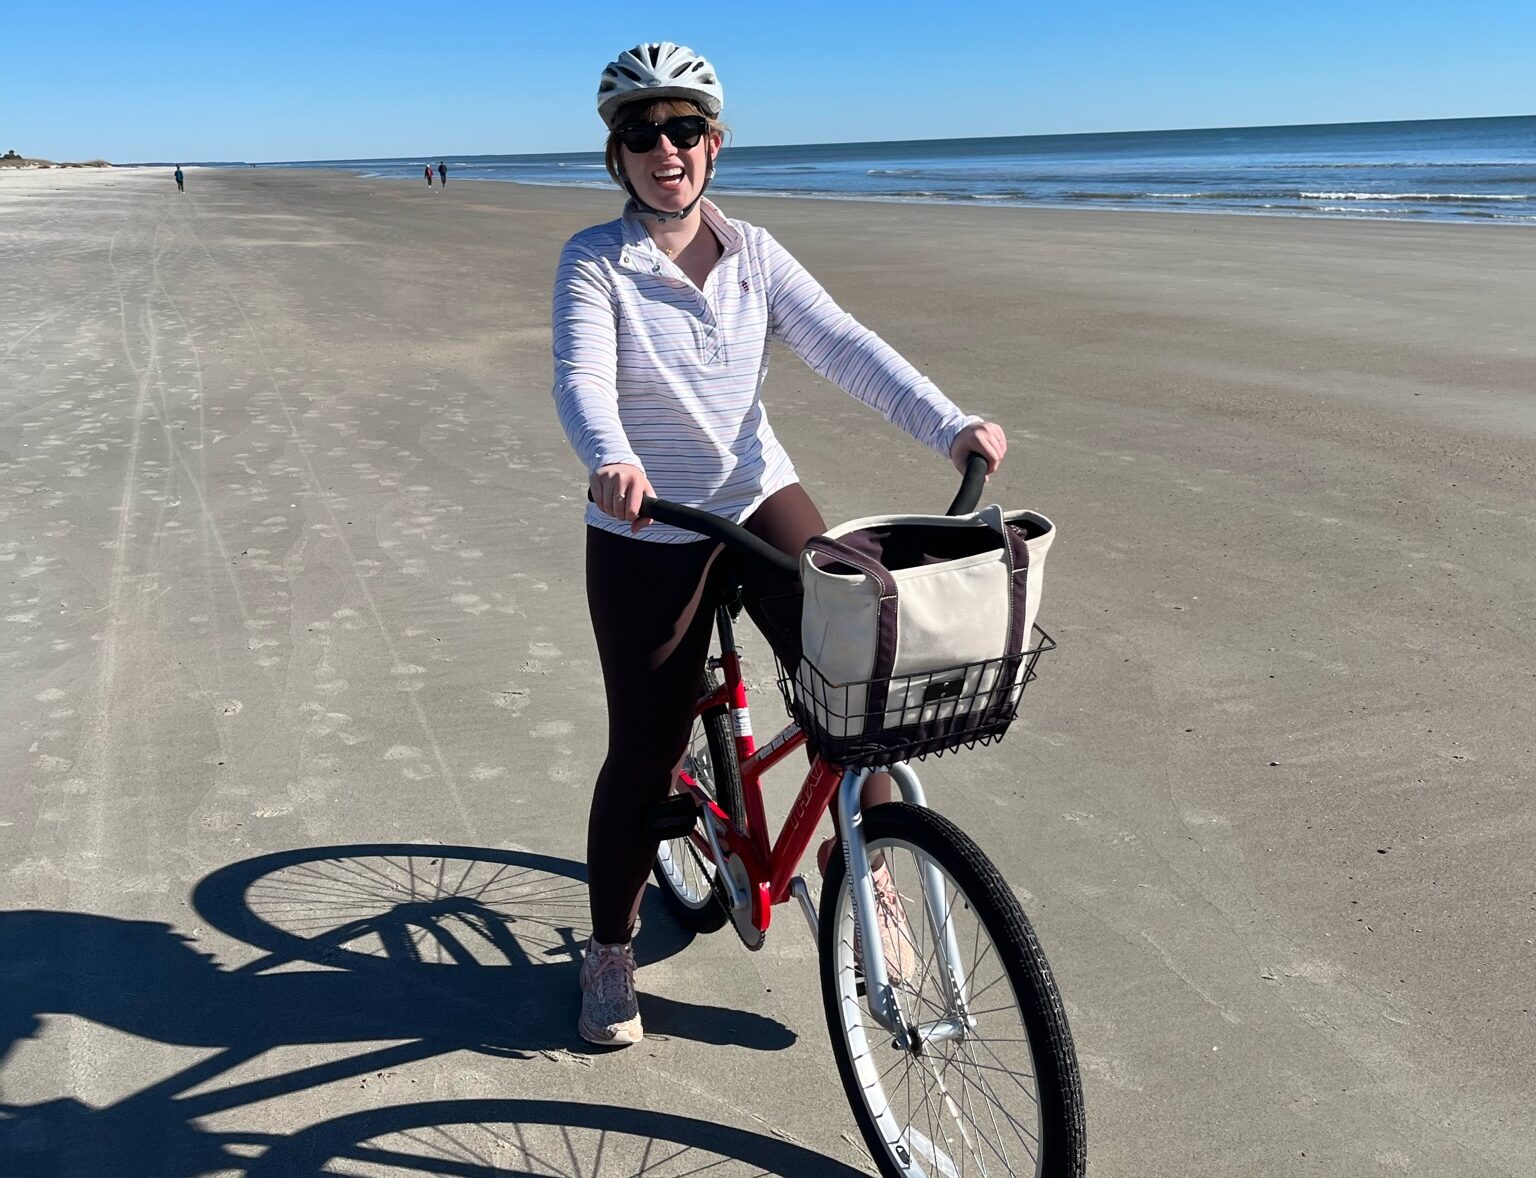 BellRinger rider on her bike the beach